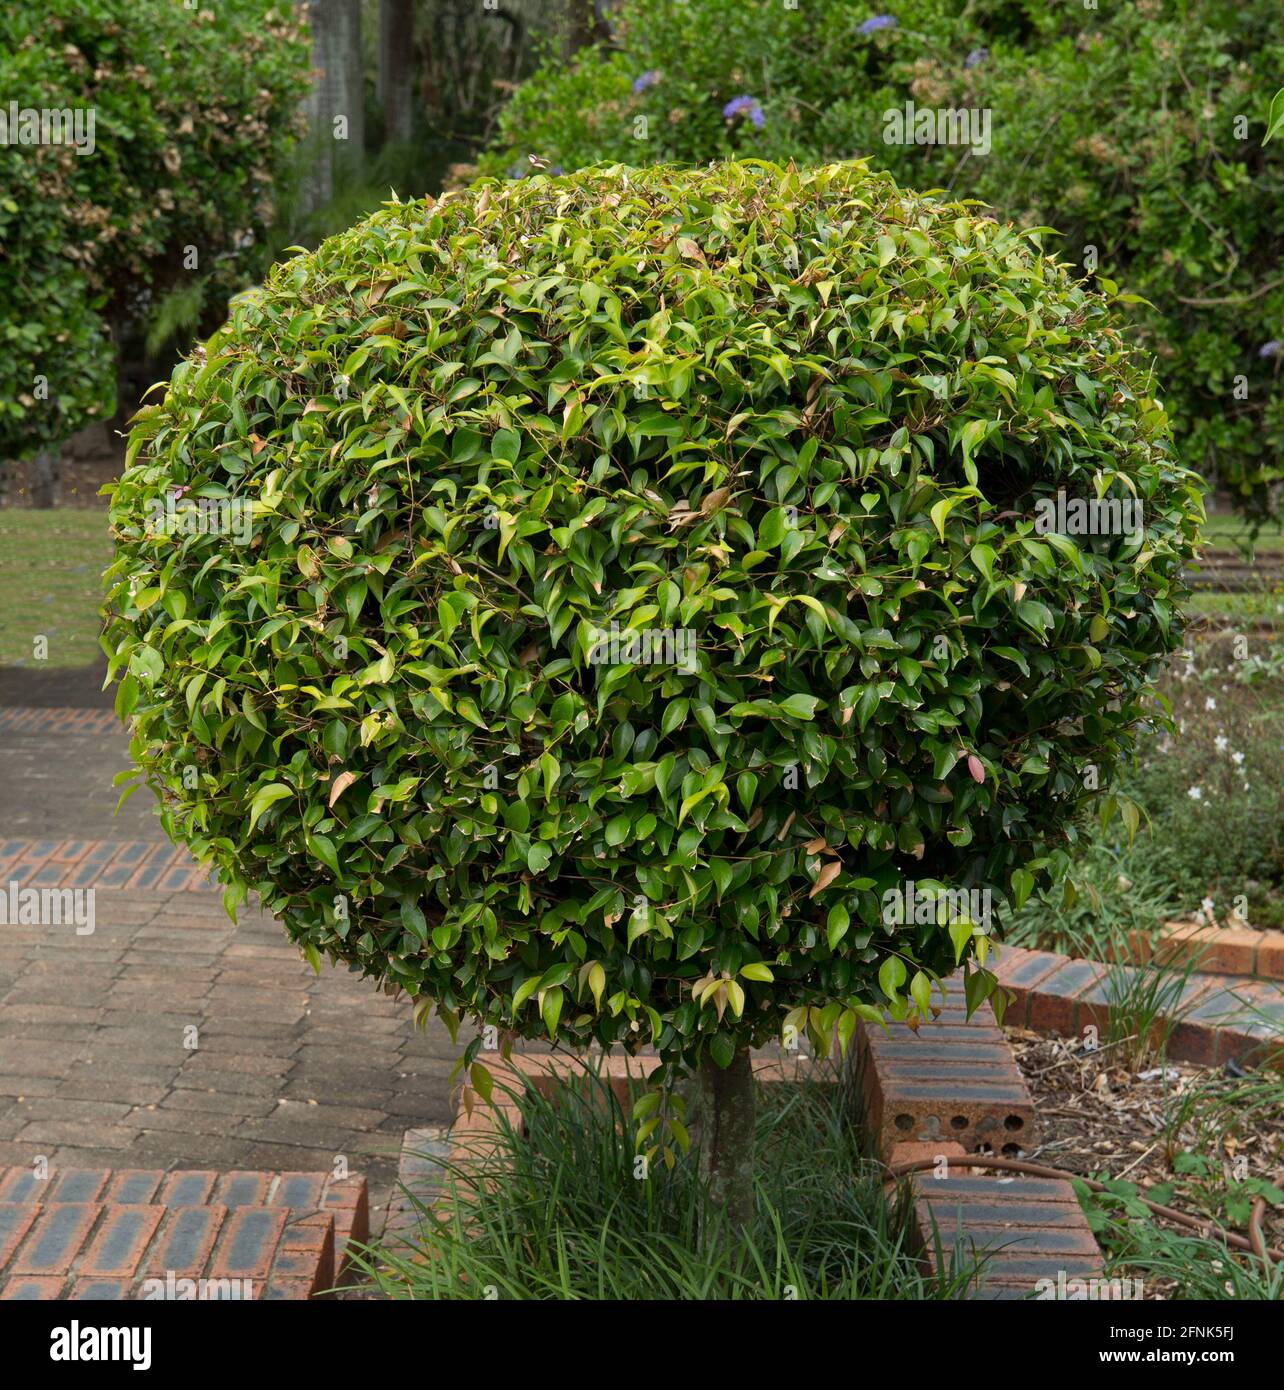 Arbuste topiaire à feuilles denses taillées en gros globulaire / forme ronde Banque D'Images